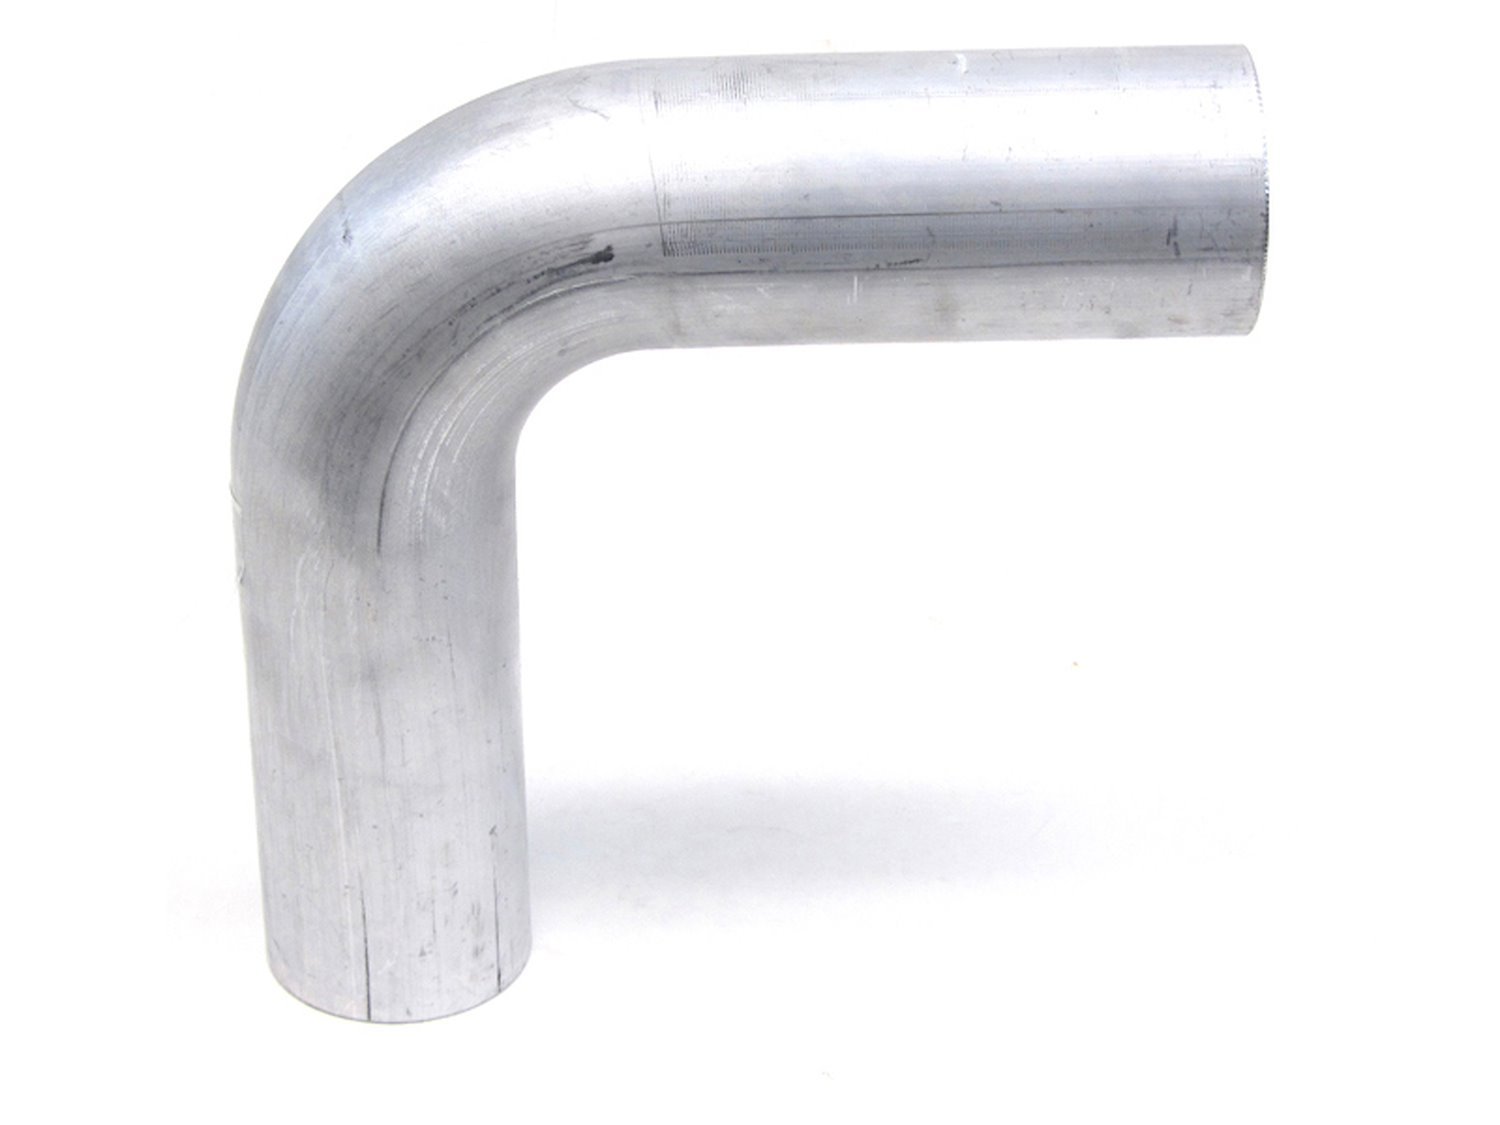 AT90-175-CLR-2 Aluminum Elbow Tube, 6061 Aluminum, 90-Degree Bend Elbow Tubing, 1-3/4 in. OD, Tight Radius, 2 in. CLR